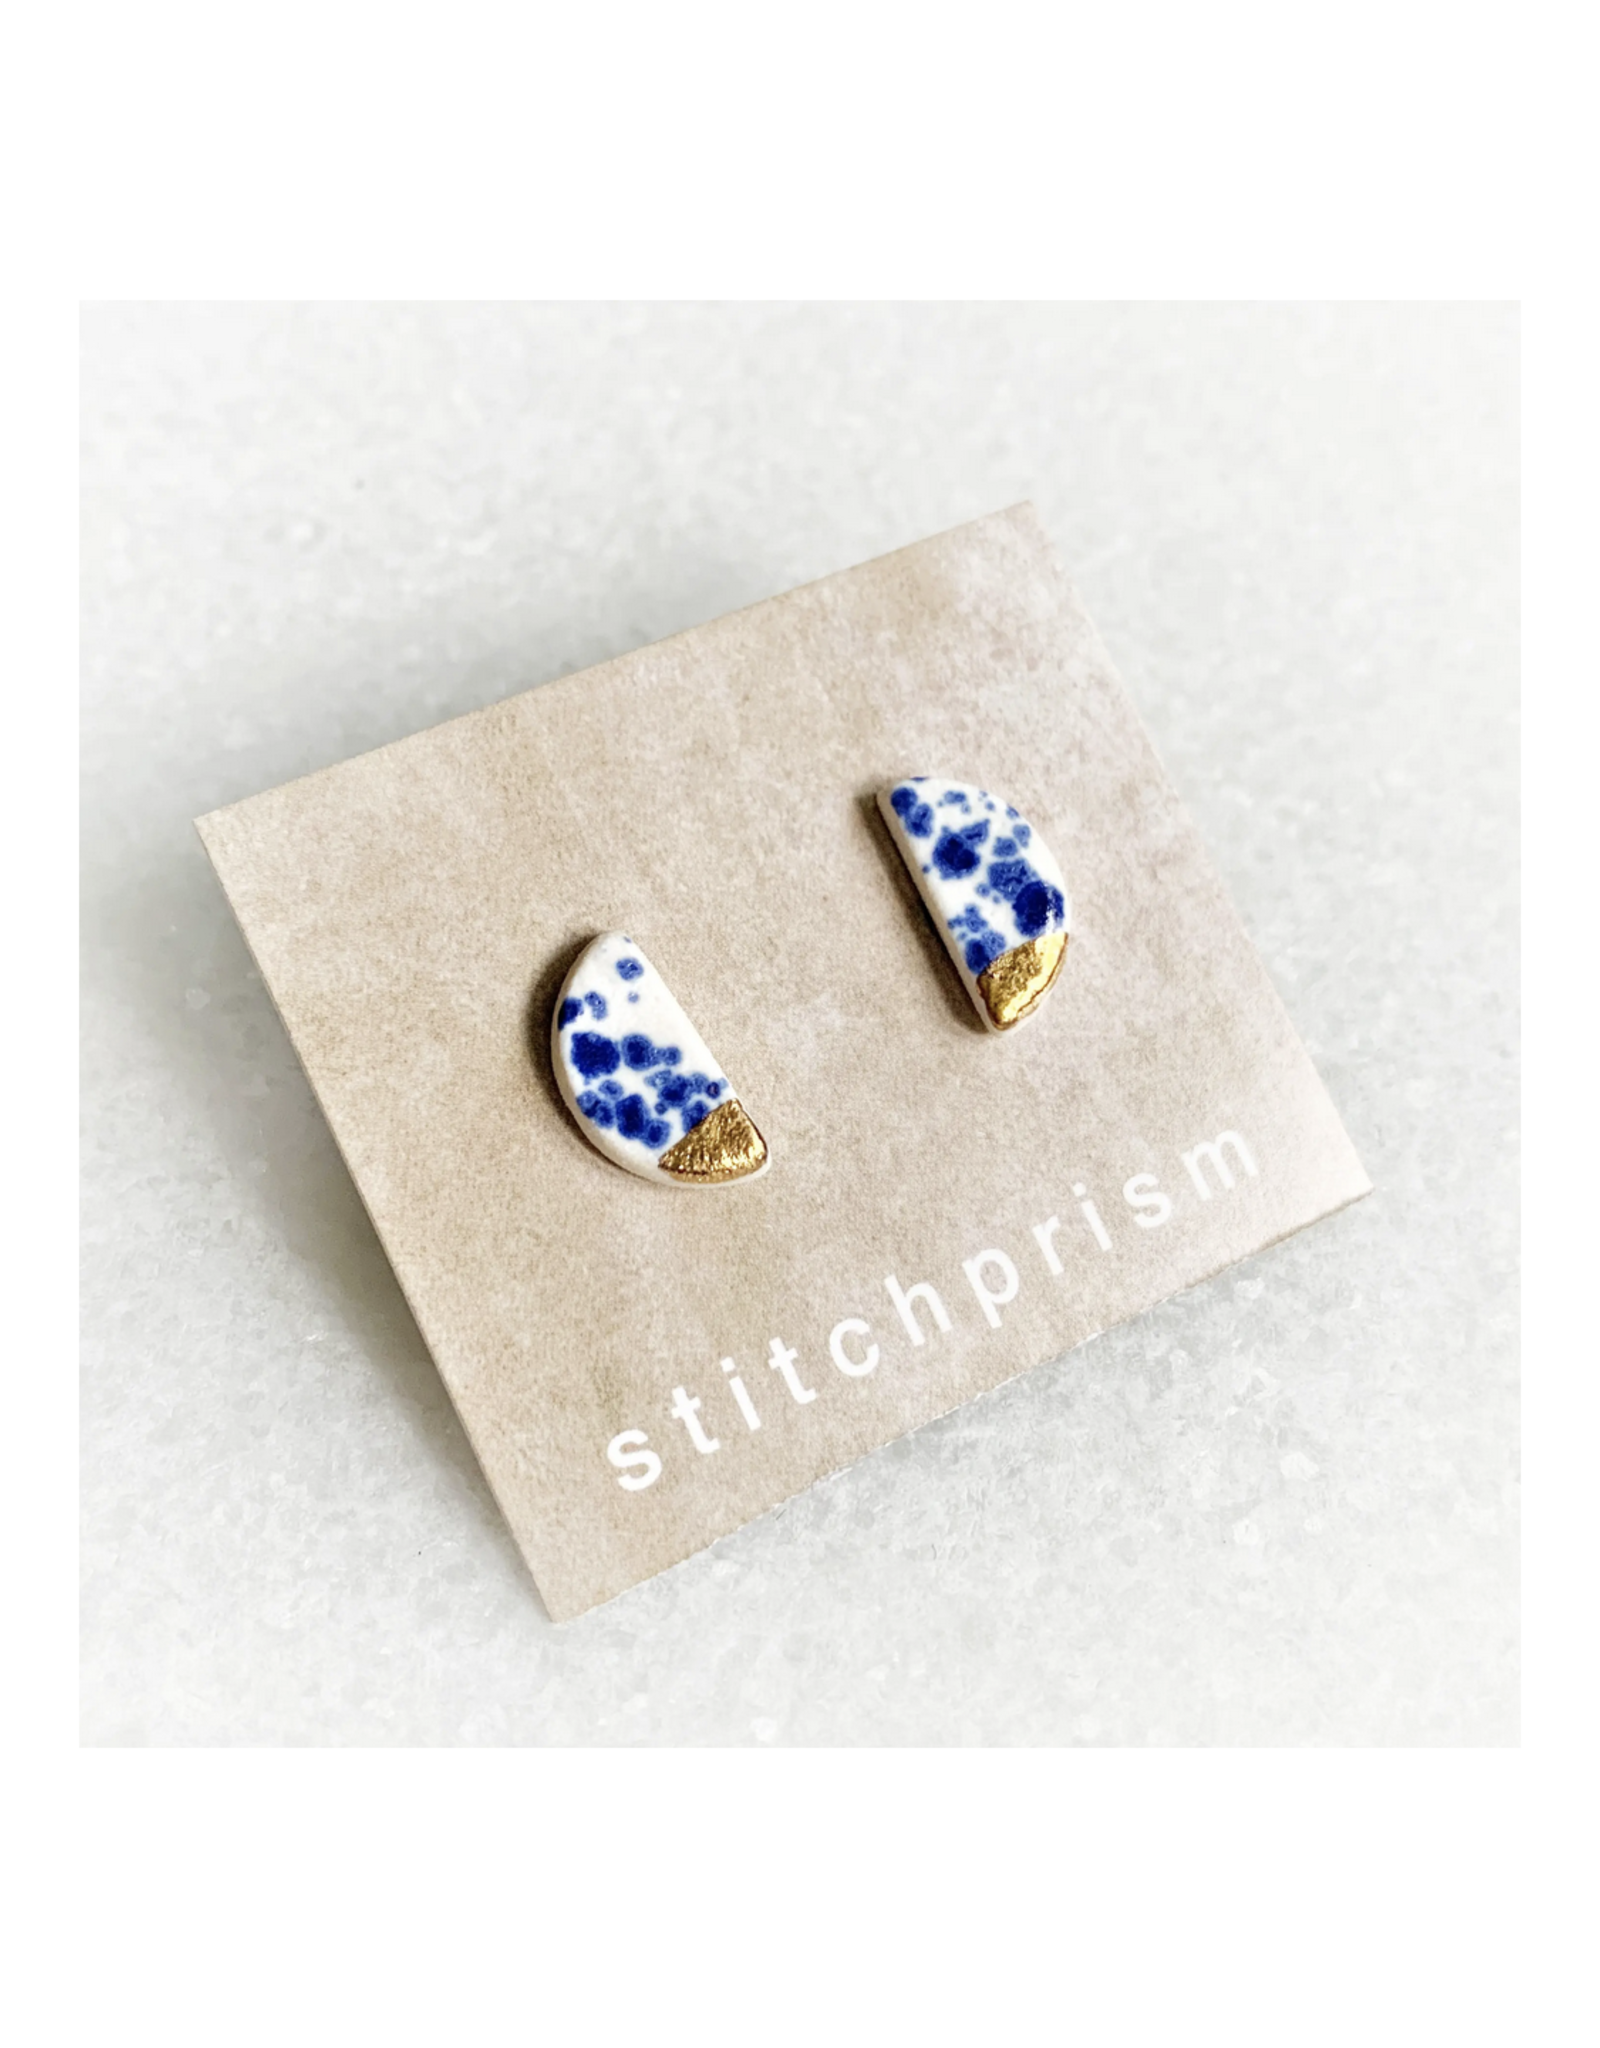 Half Moon Stud Earrings -  Blue Speckle /Gold